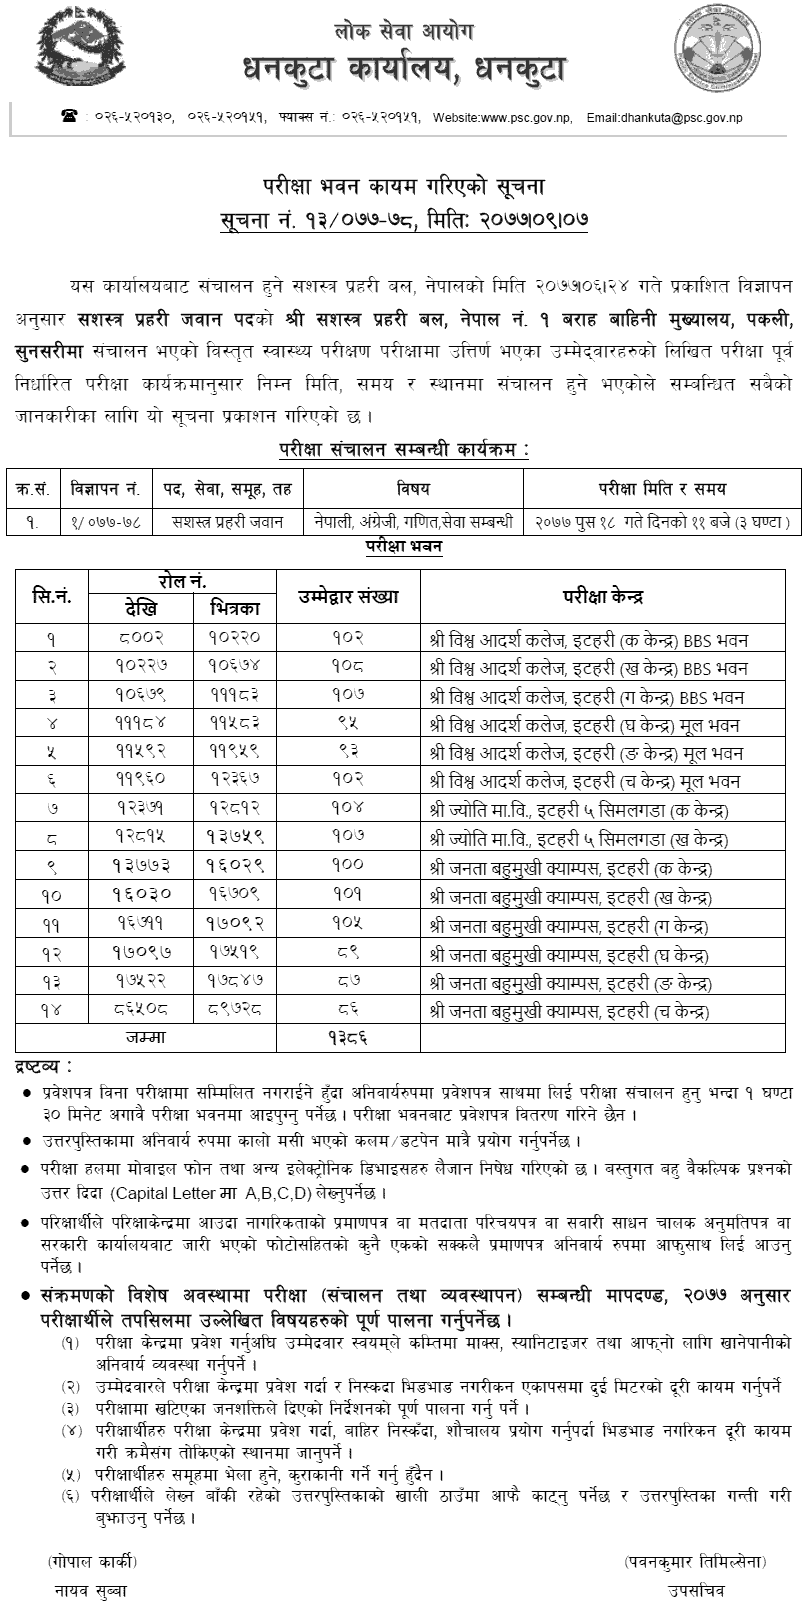 APF Nepal Jawan Written Exam Center Sunsari, Itahari